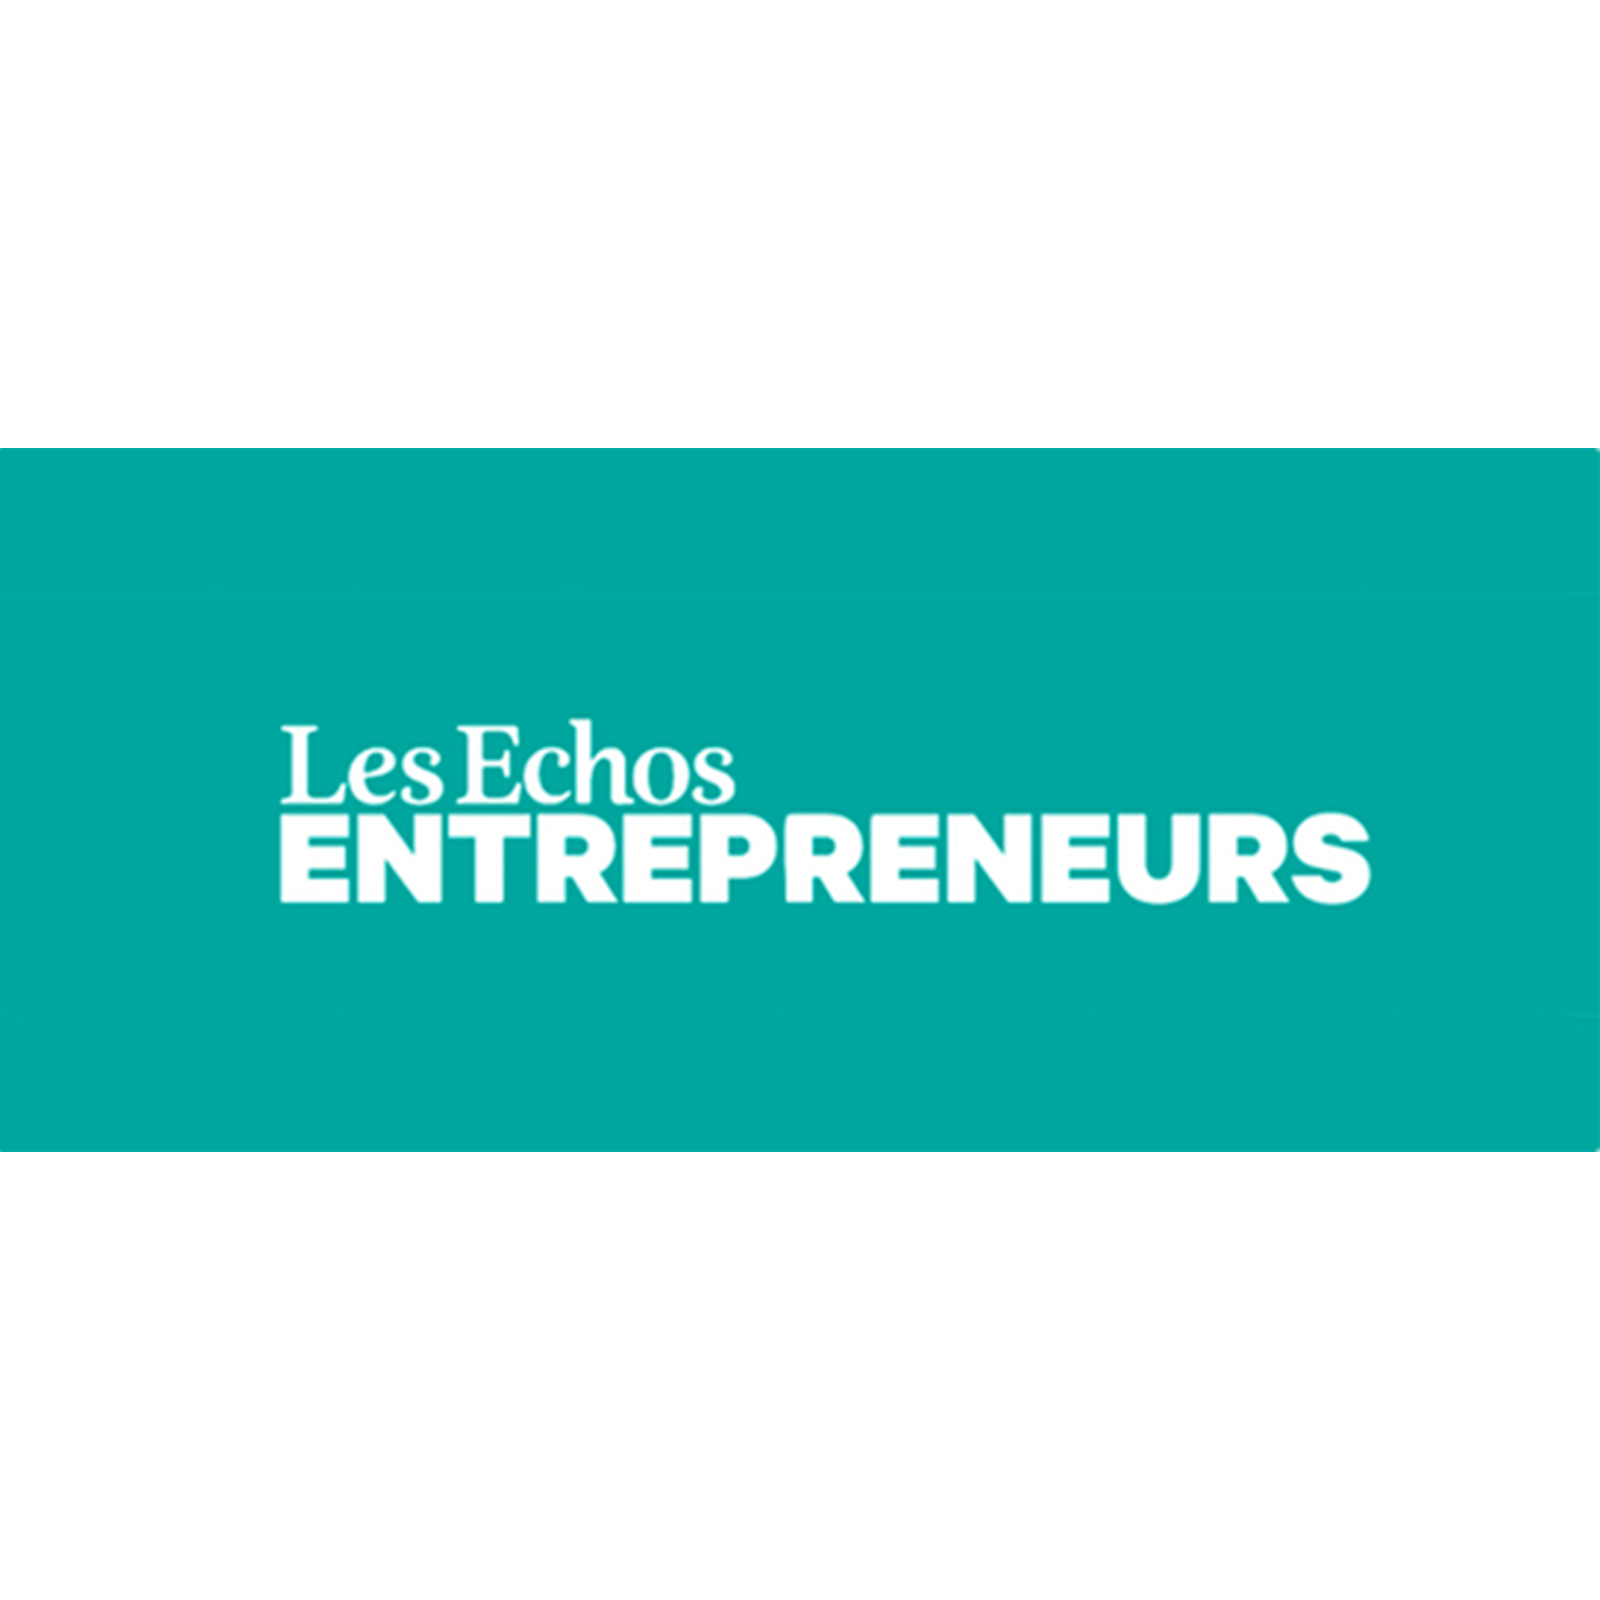 Les Echos Entrepreneurs